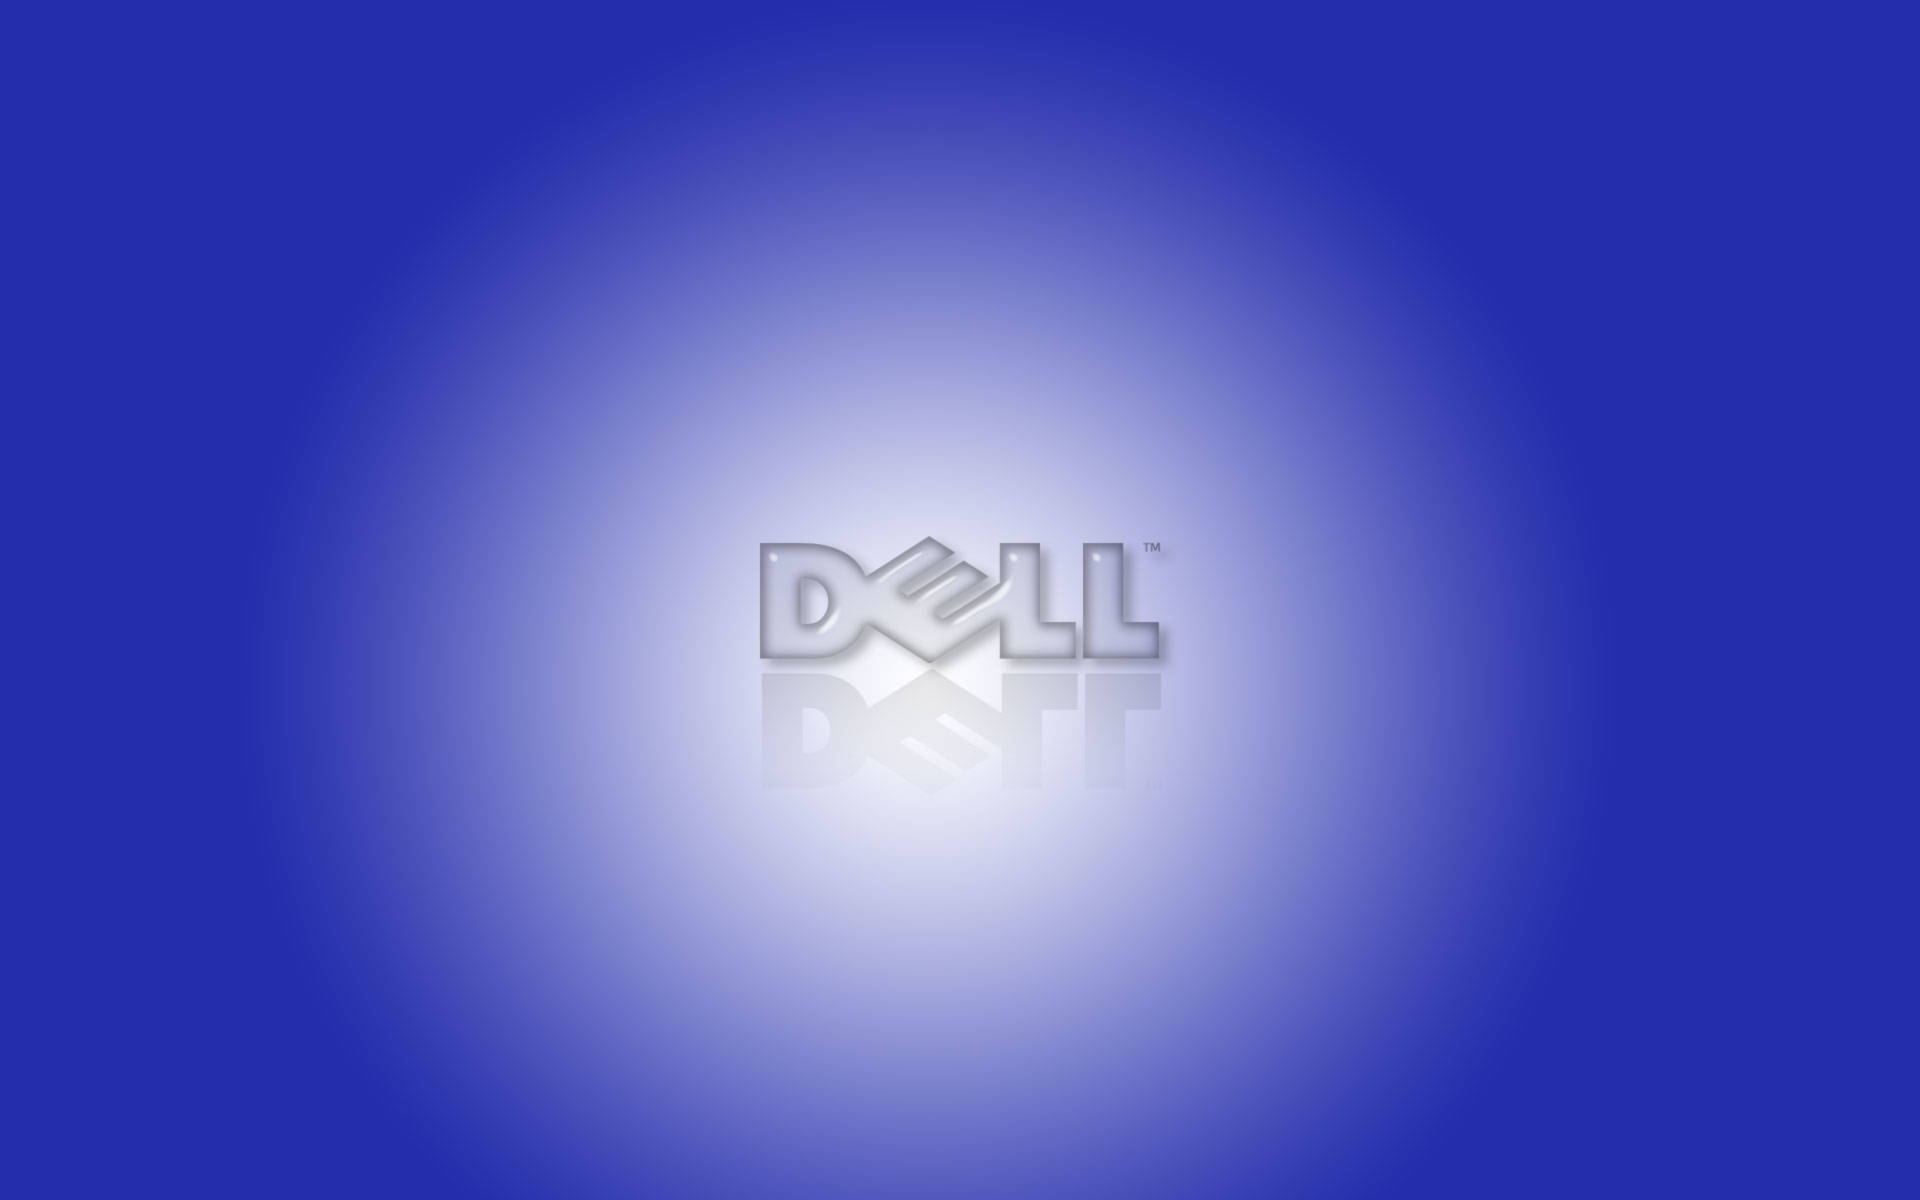 Spotlighted Dell 4k Logo